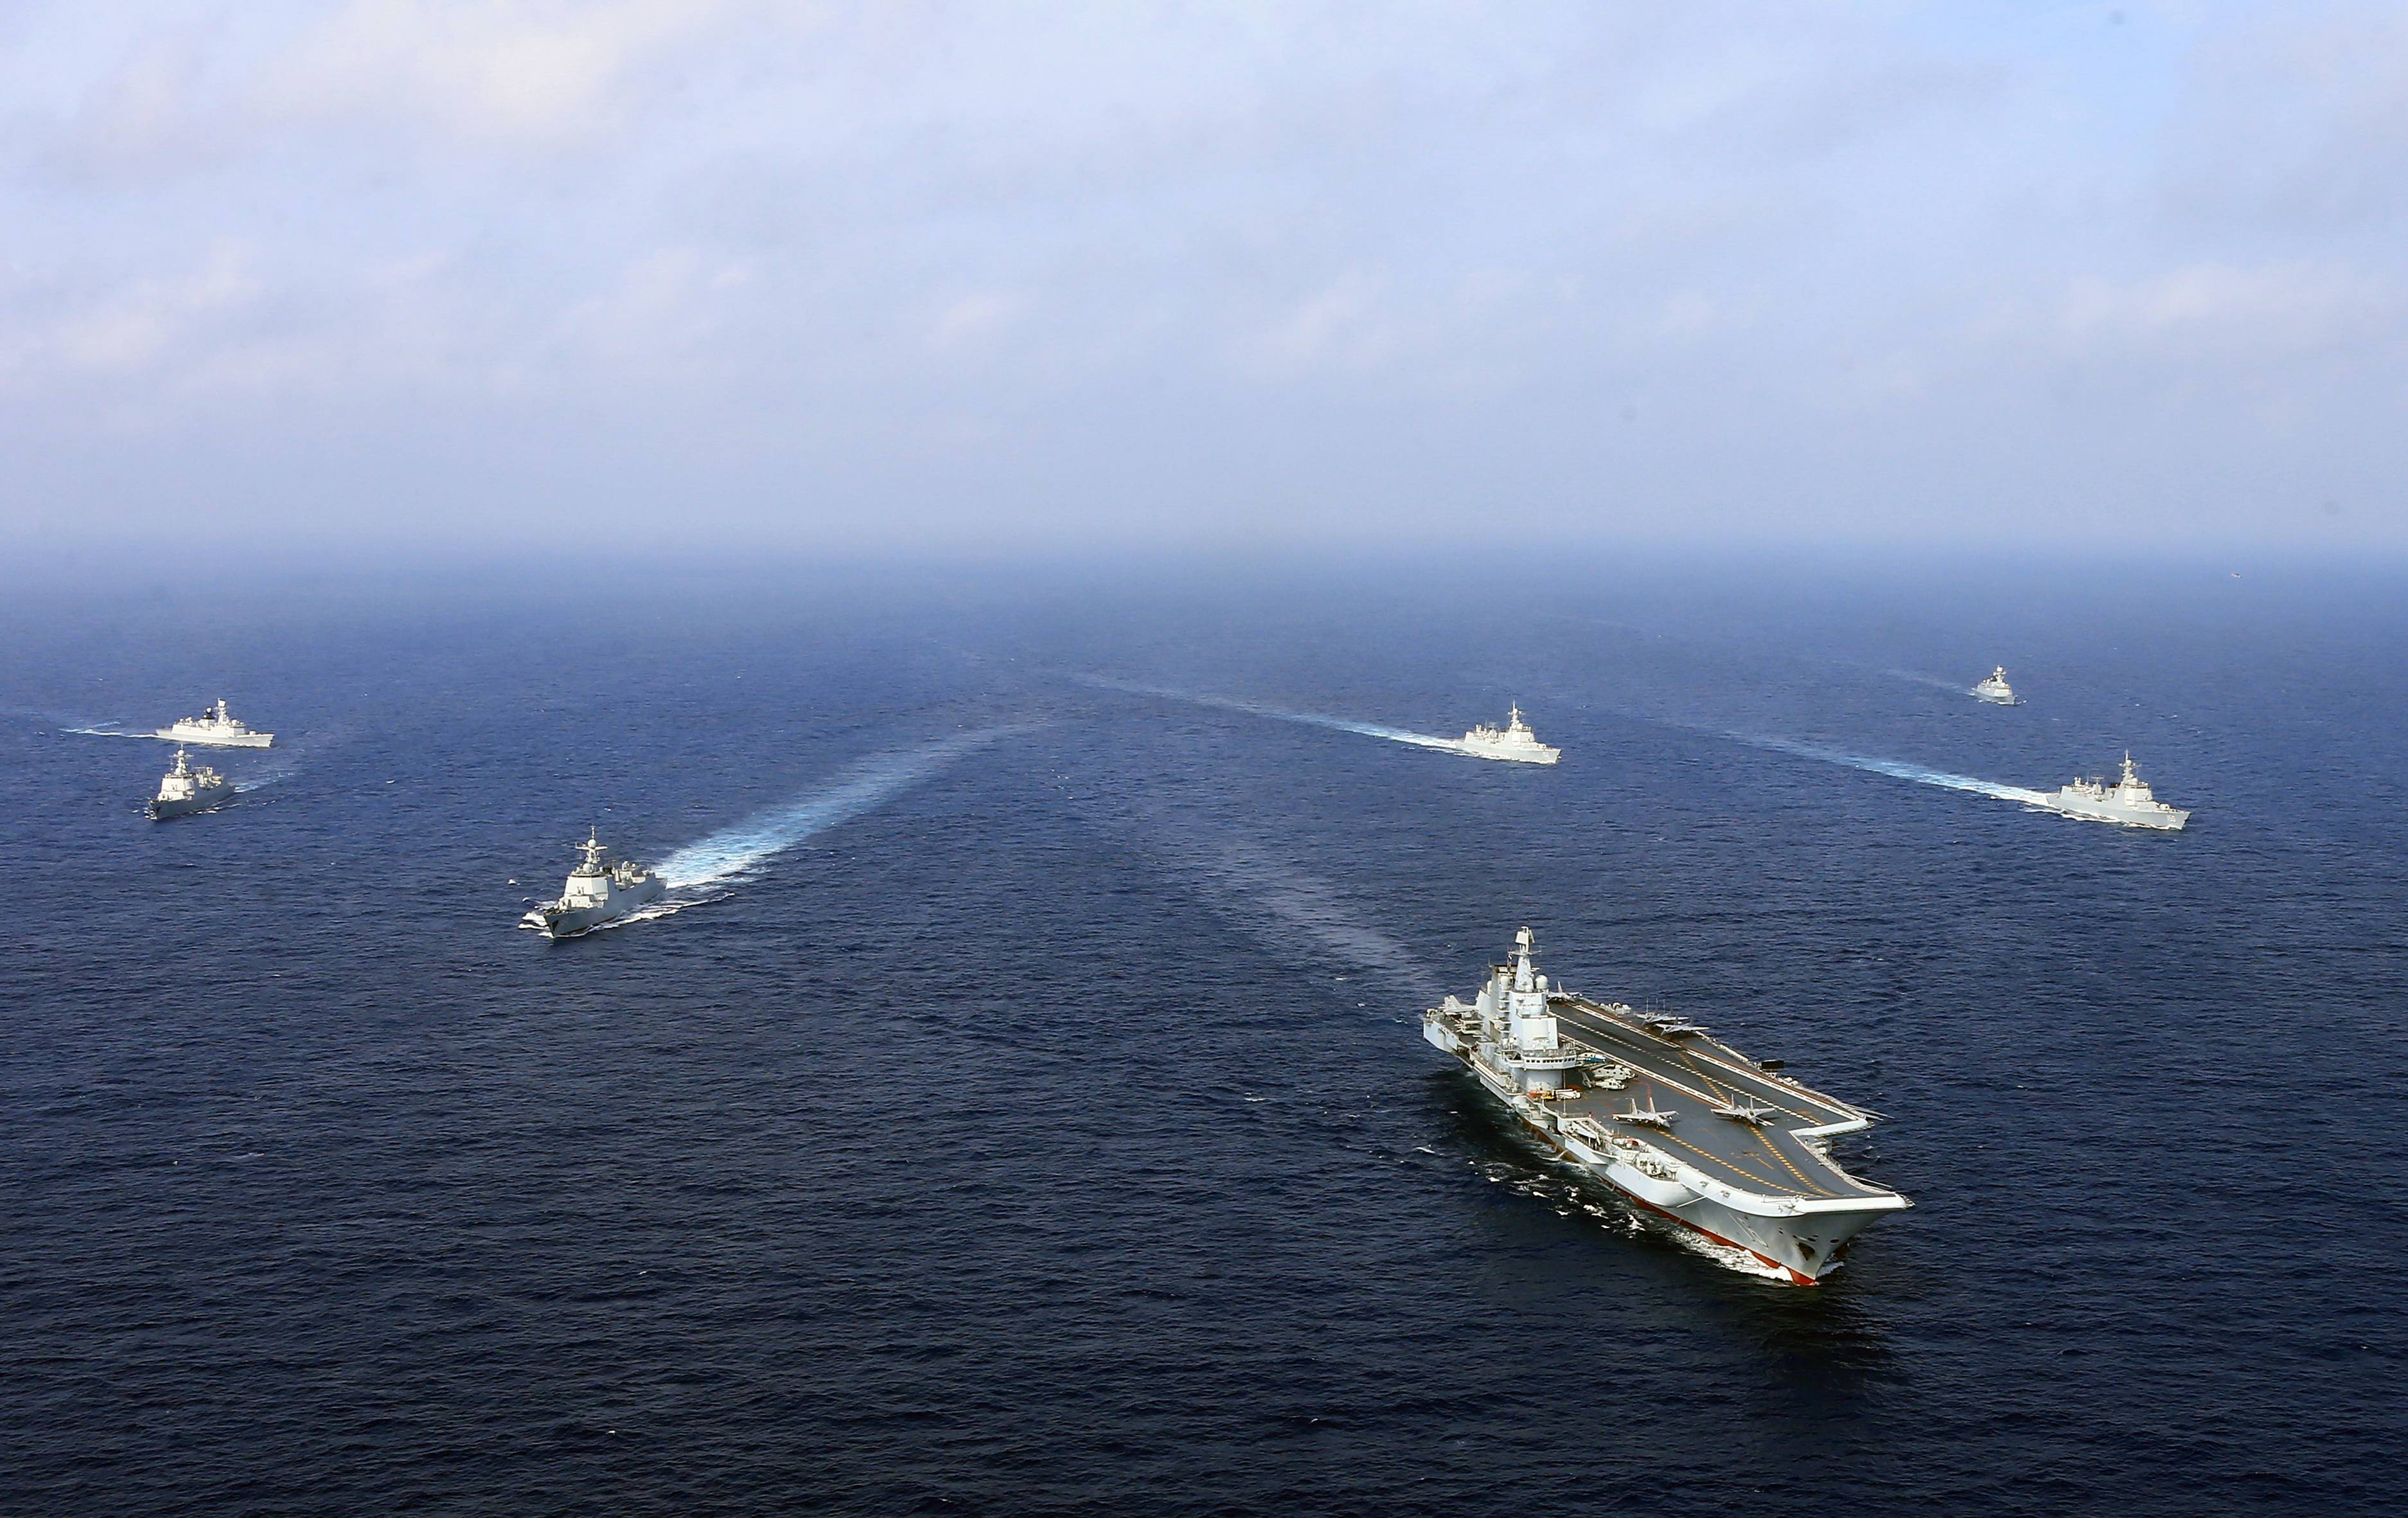 从通过台湾海峡进入南海,到开展远航训练,辽宁舰一路劈风斩浪